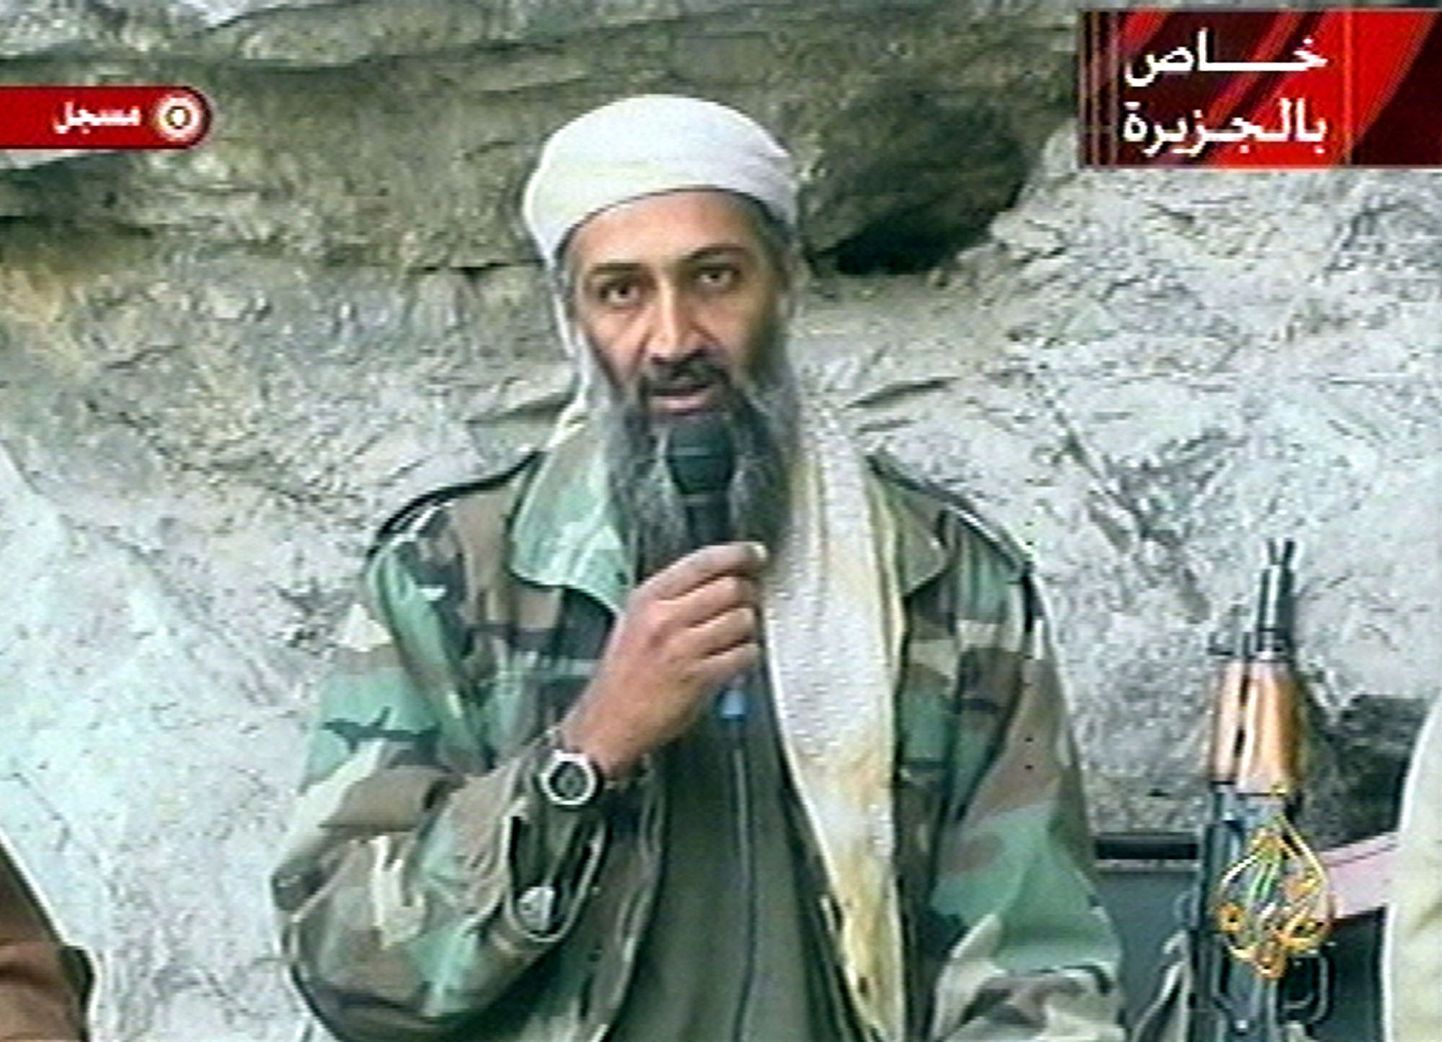 Al Jazeera on muuseas tuntust kogunud ka Osama bin Ladeni läkituste edastamisega.